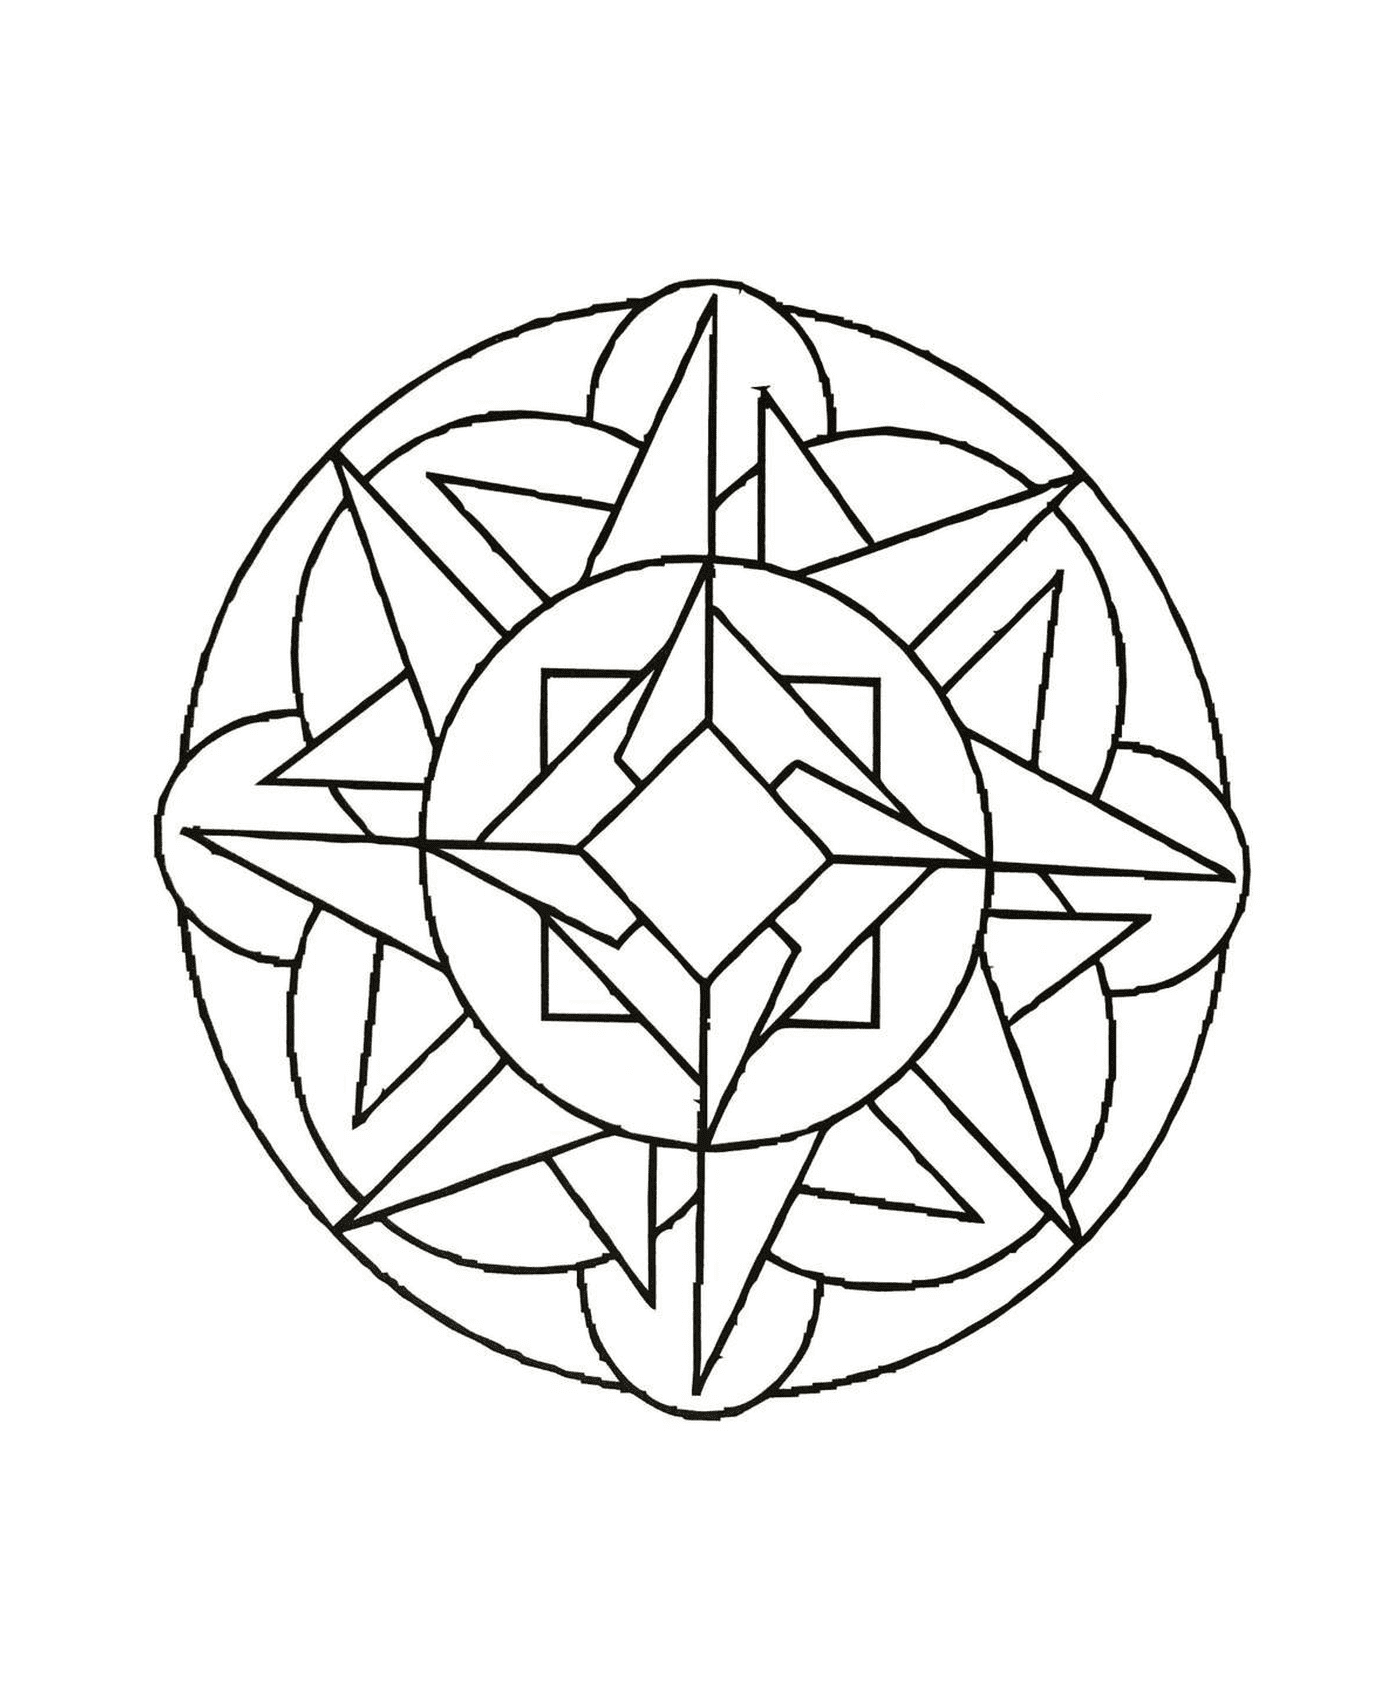  Elaborated geometric Mandala 